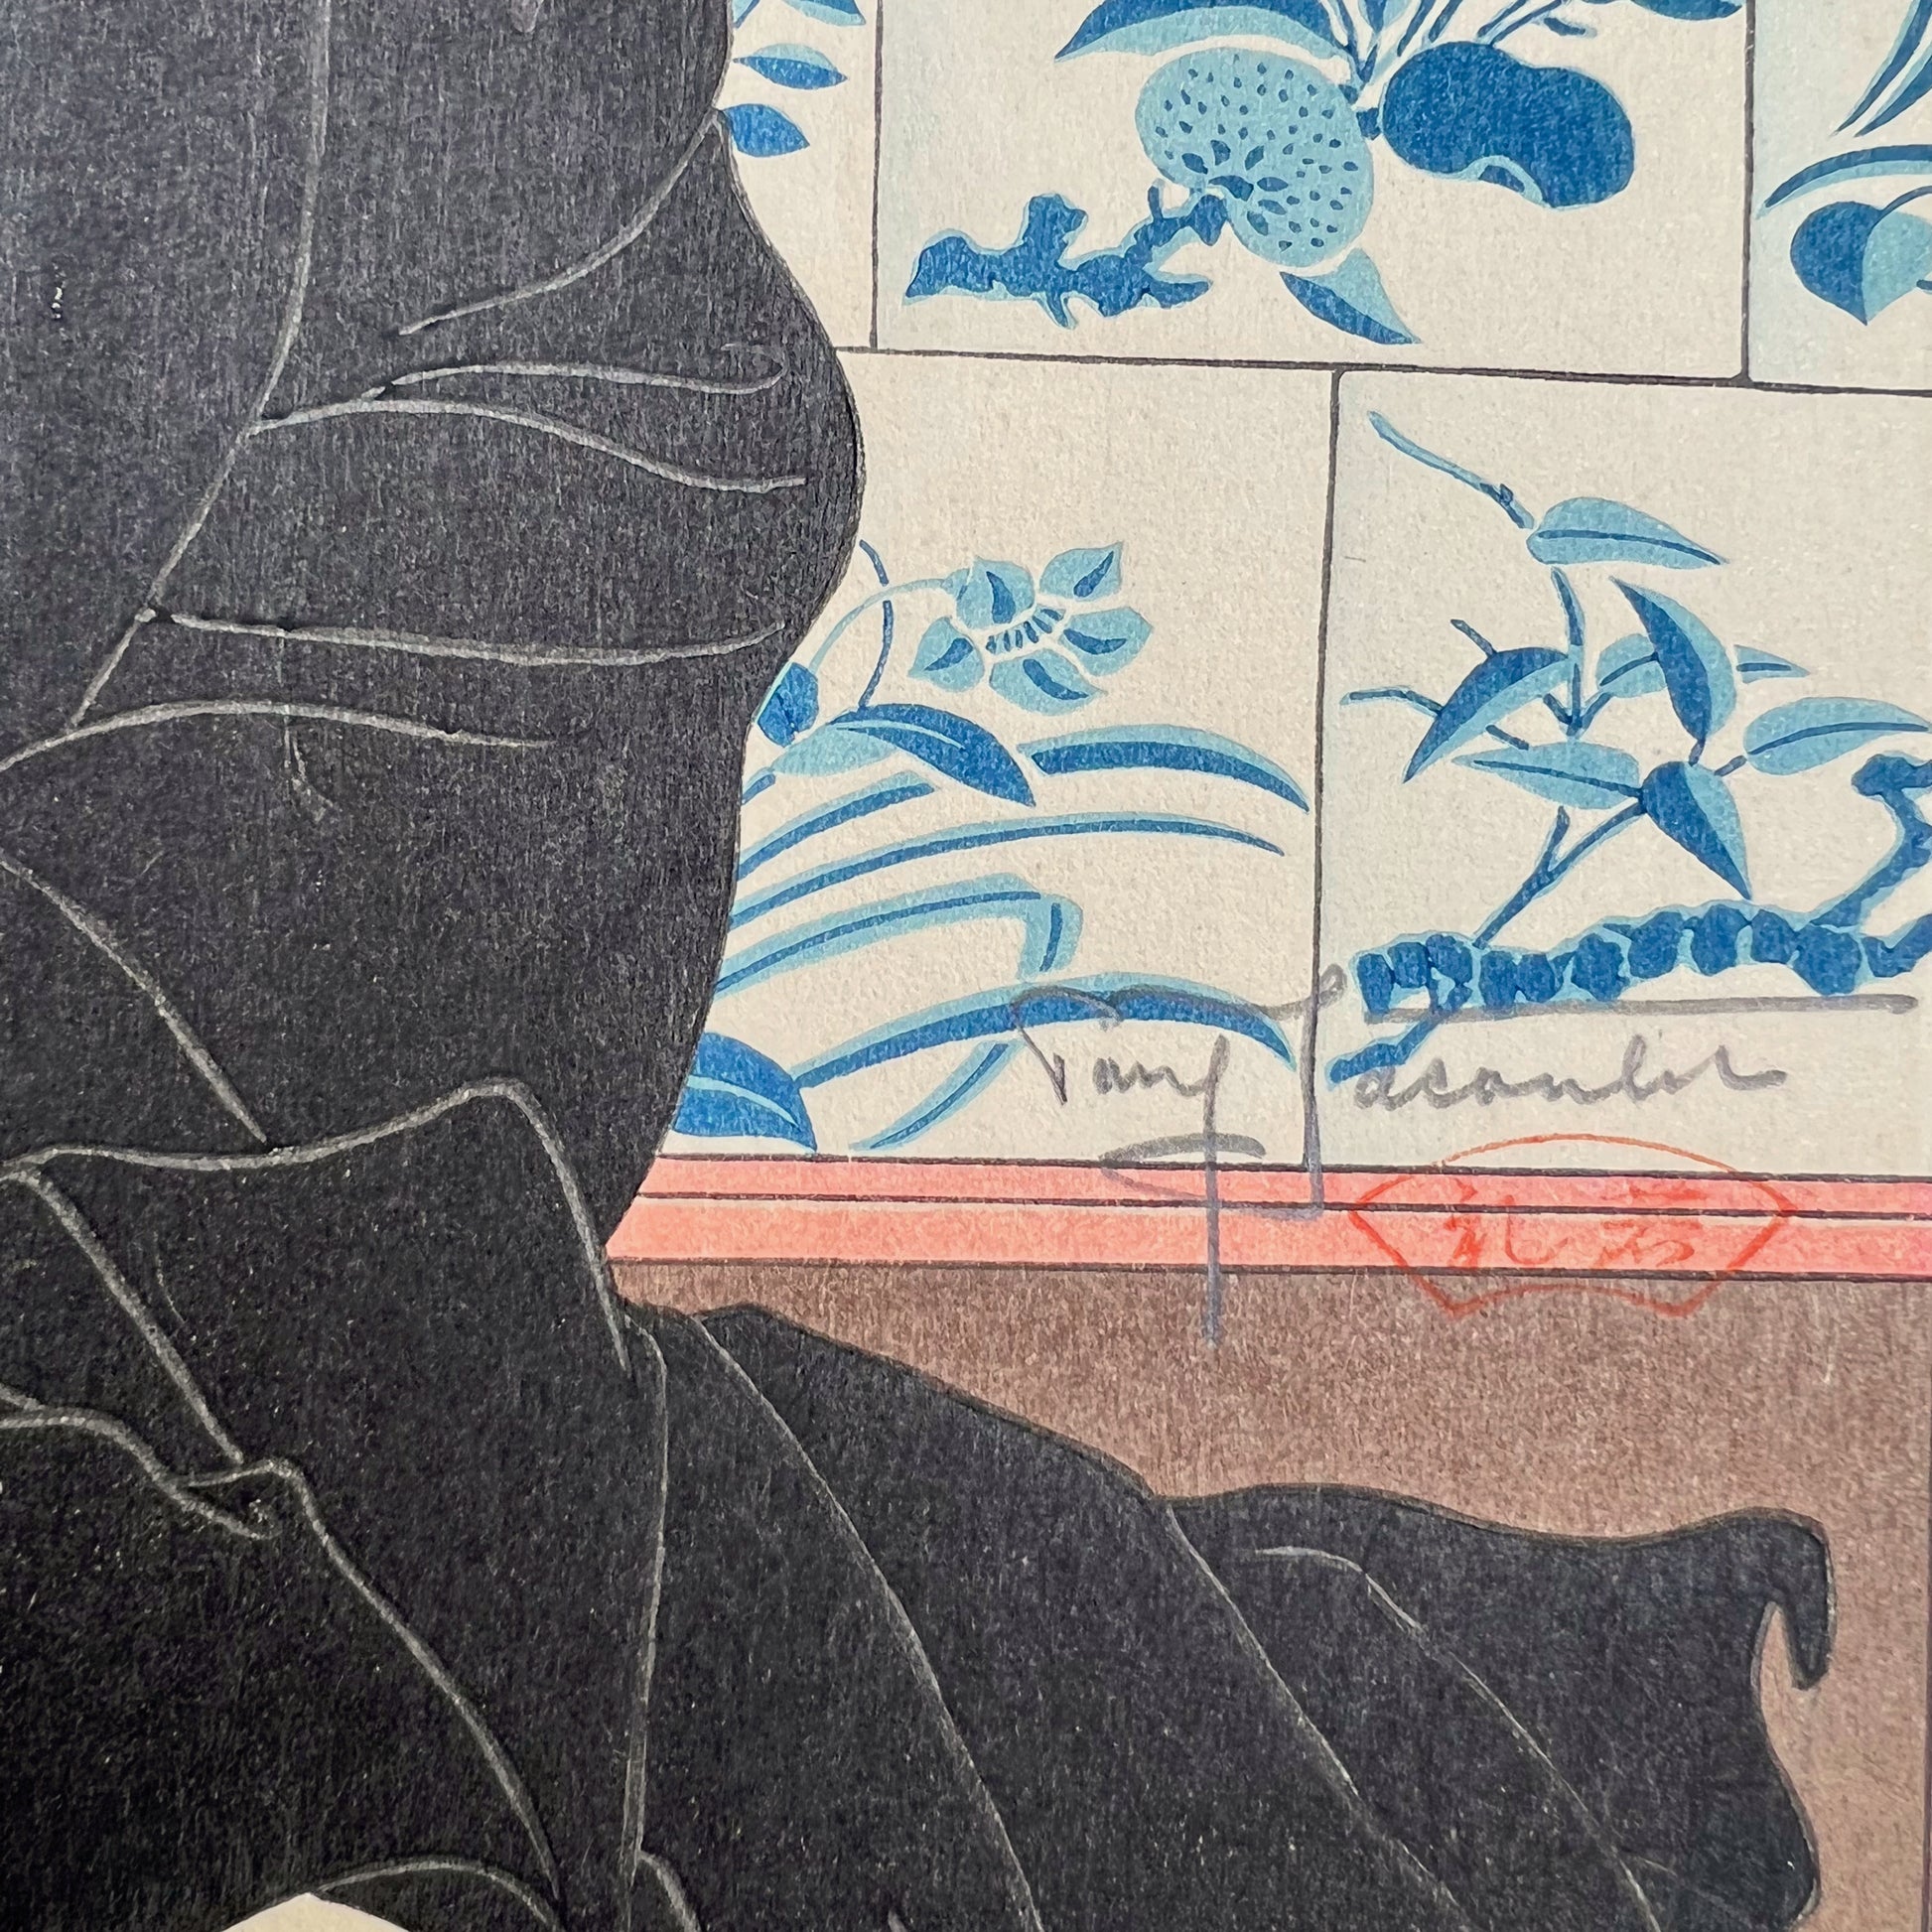 estampe japonaise homme en kimono noir assis , tenant un éventail, la signature de l'artiste